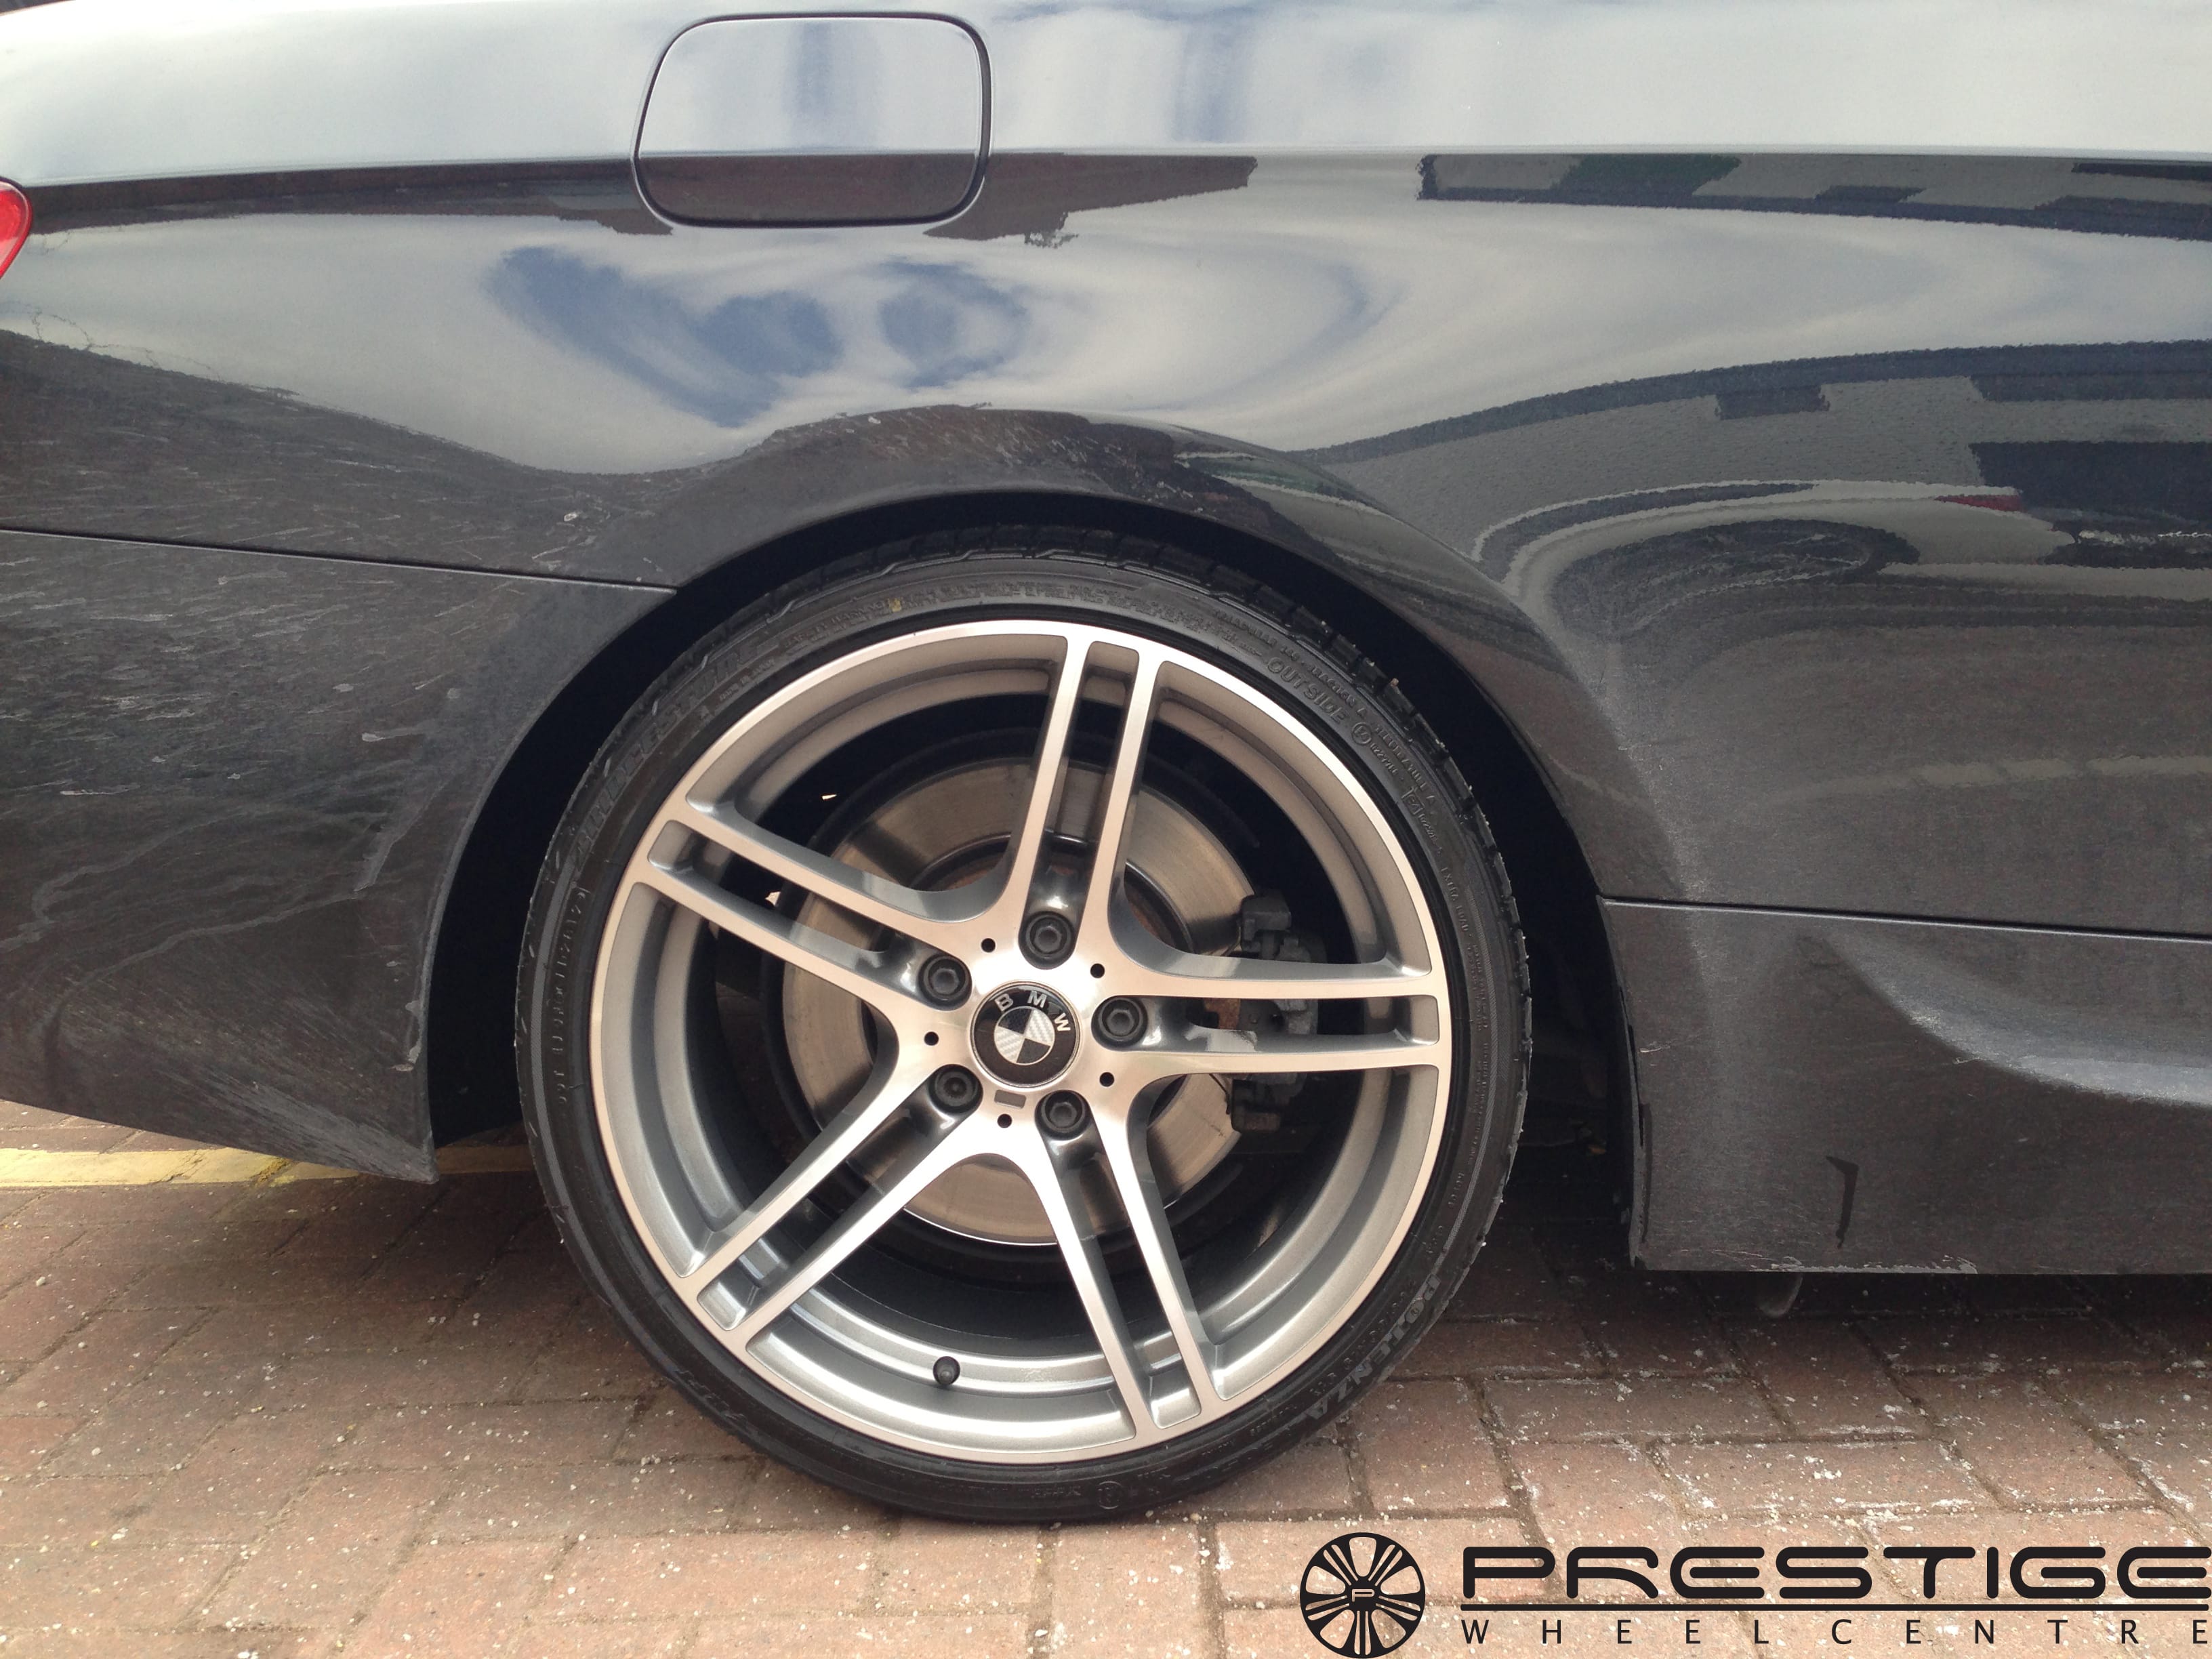 BMW 313 alloy wheels fully refurbished and diamond cut @ Prestige Wheel